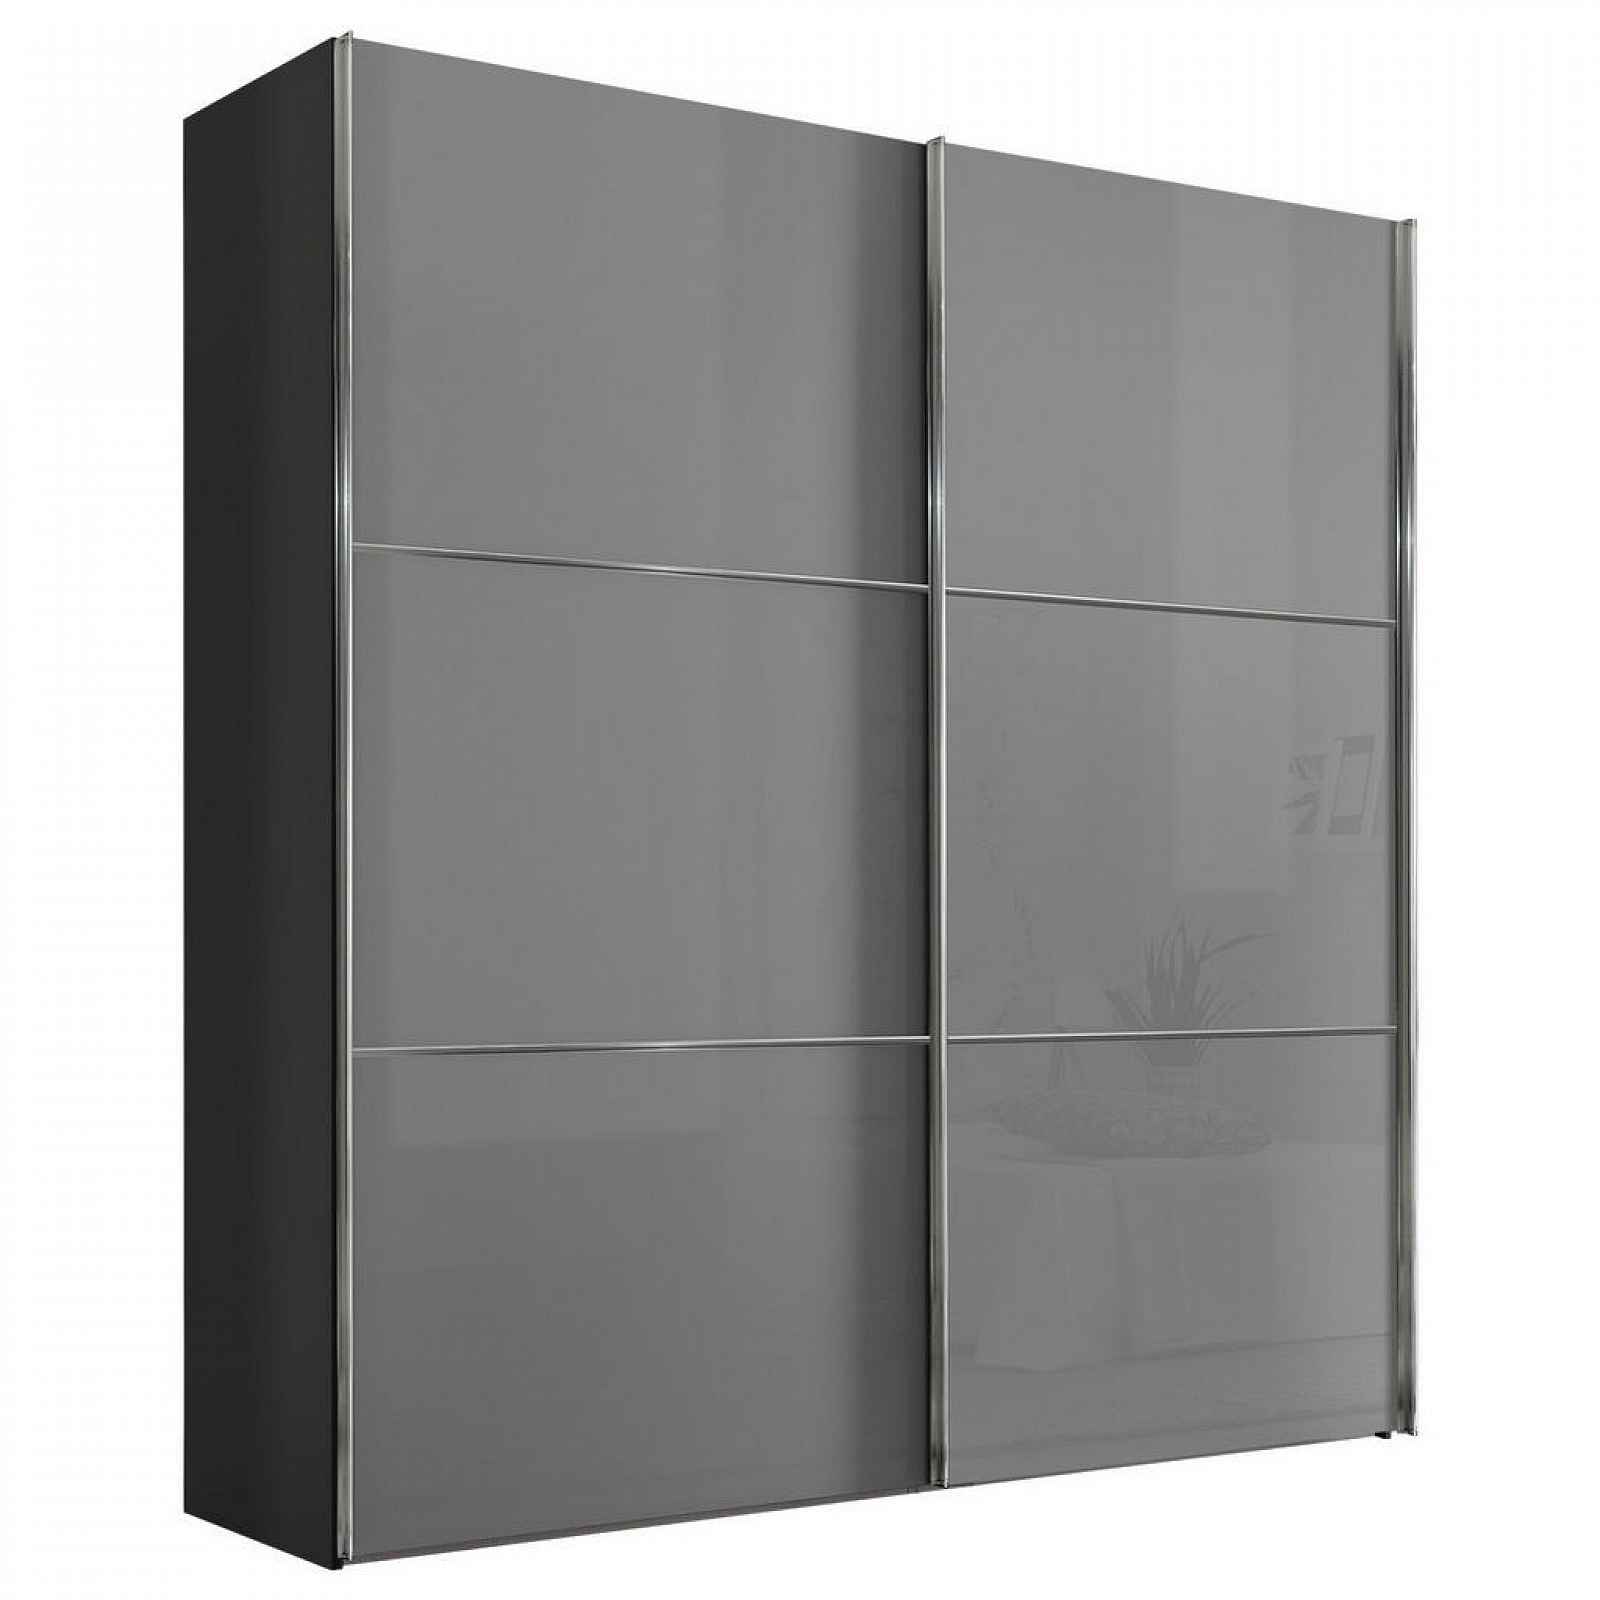 Moderano SCHWEBETÜRENSCHRANK Glasfront, světle šedá, tmavě šedá, 188/222/68 cm - Šatní skříně - 000531006069